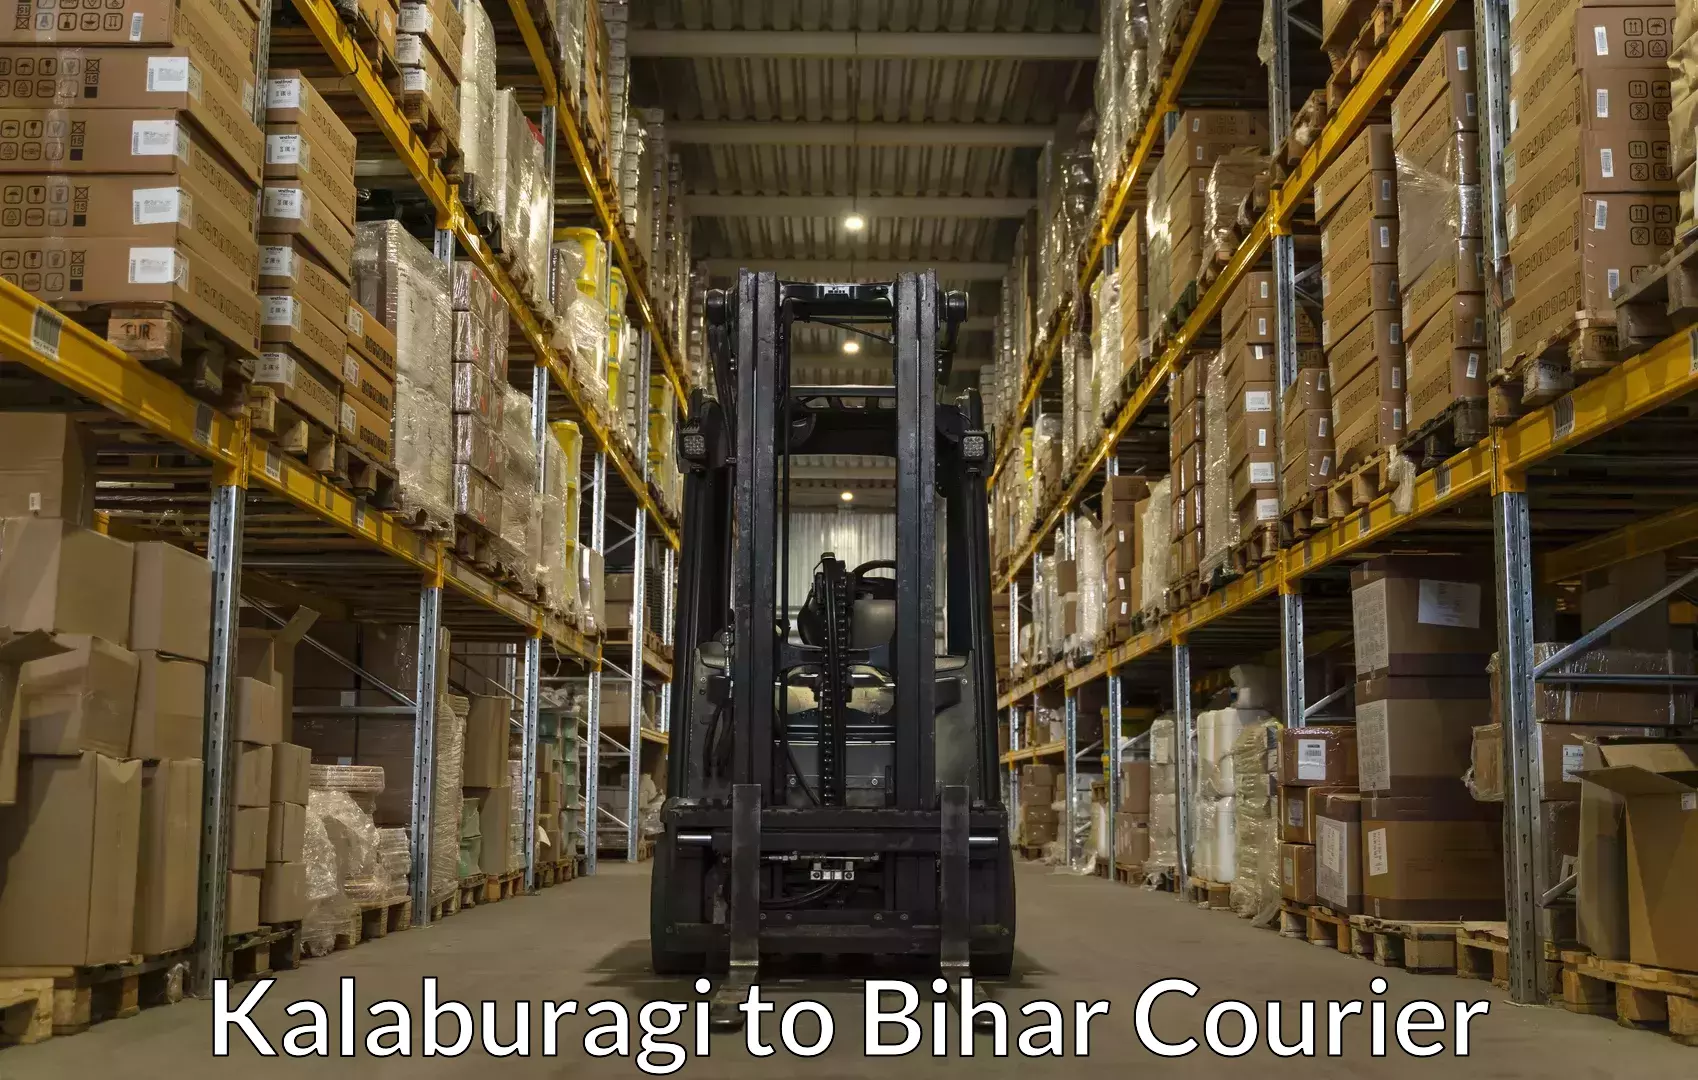 Baggage courier rates calculator Kalaburagi to Bihar